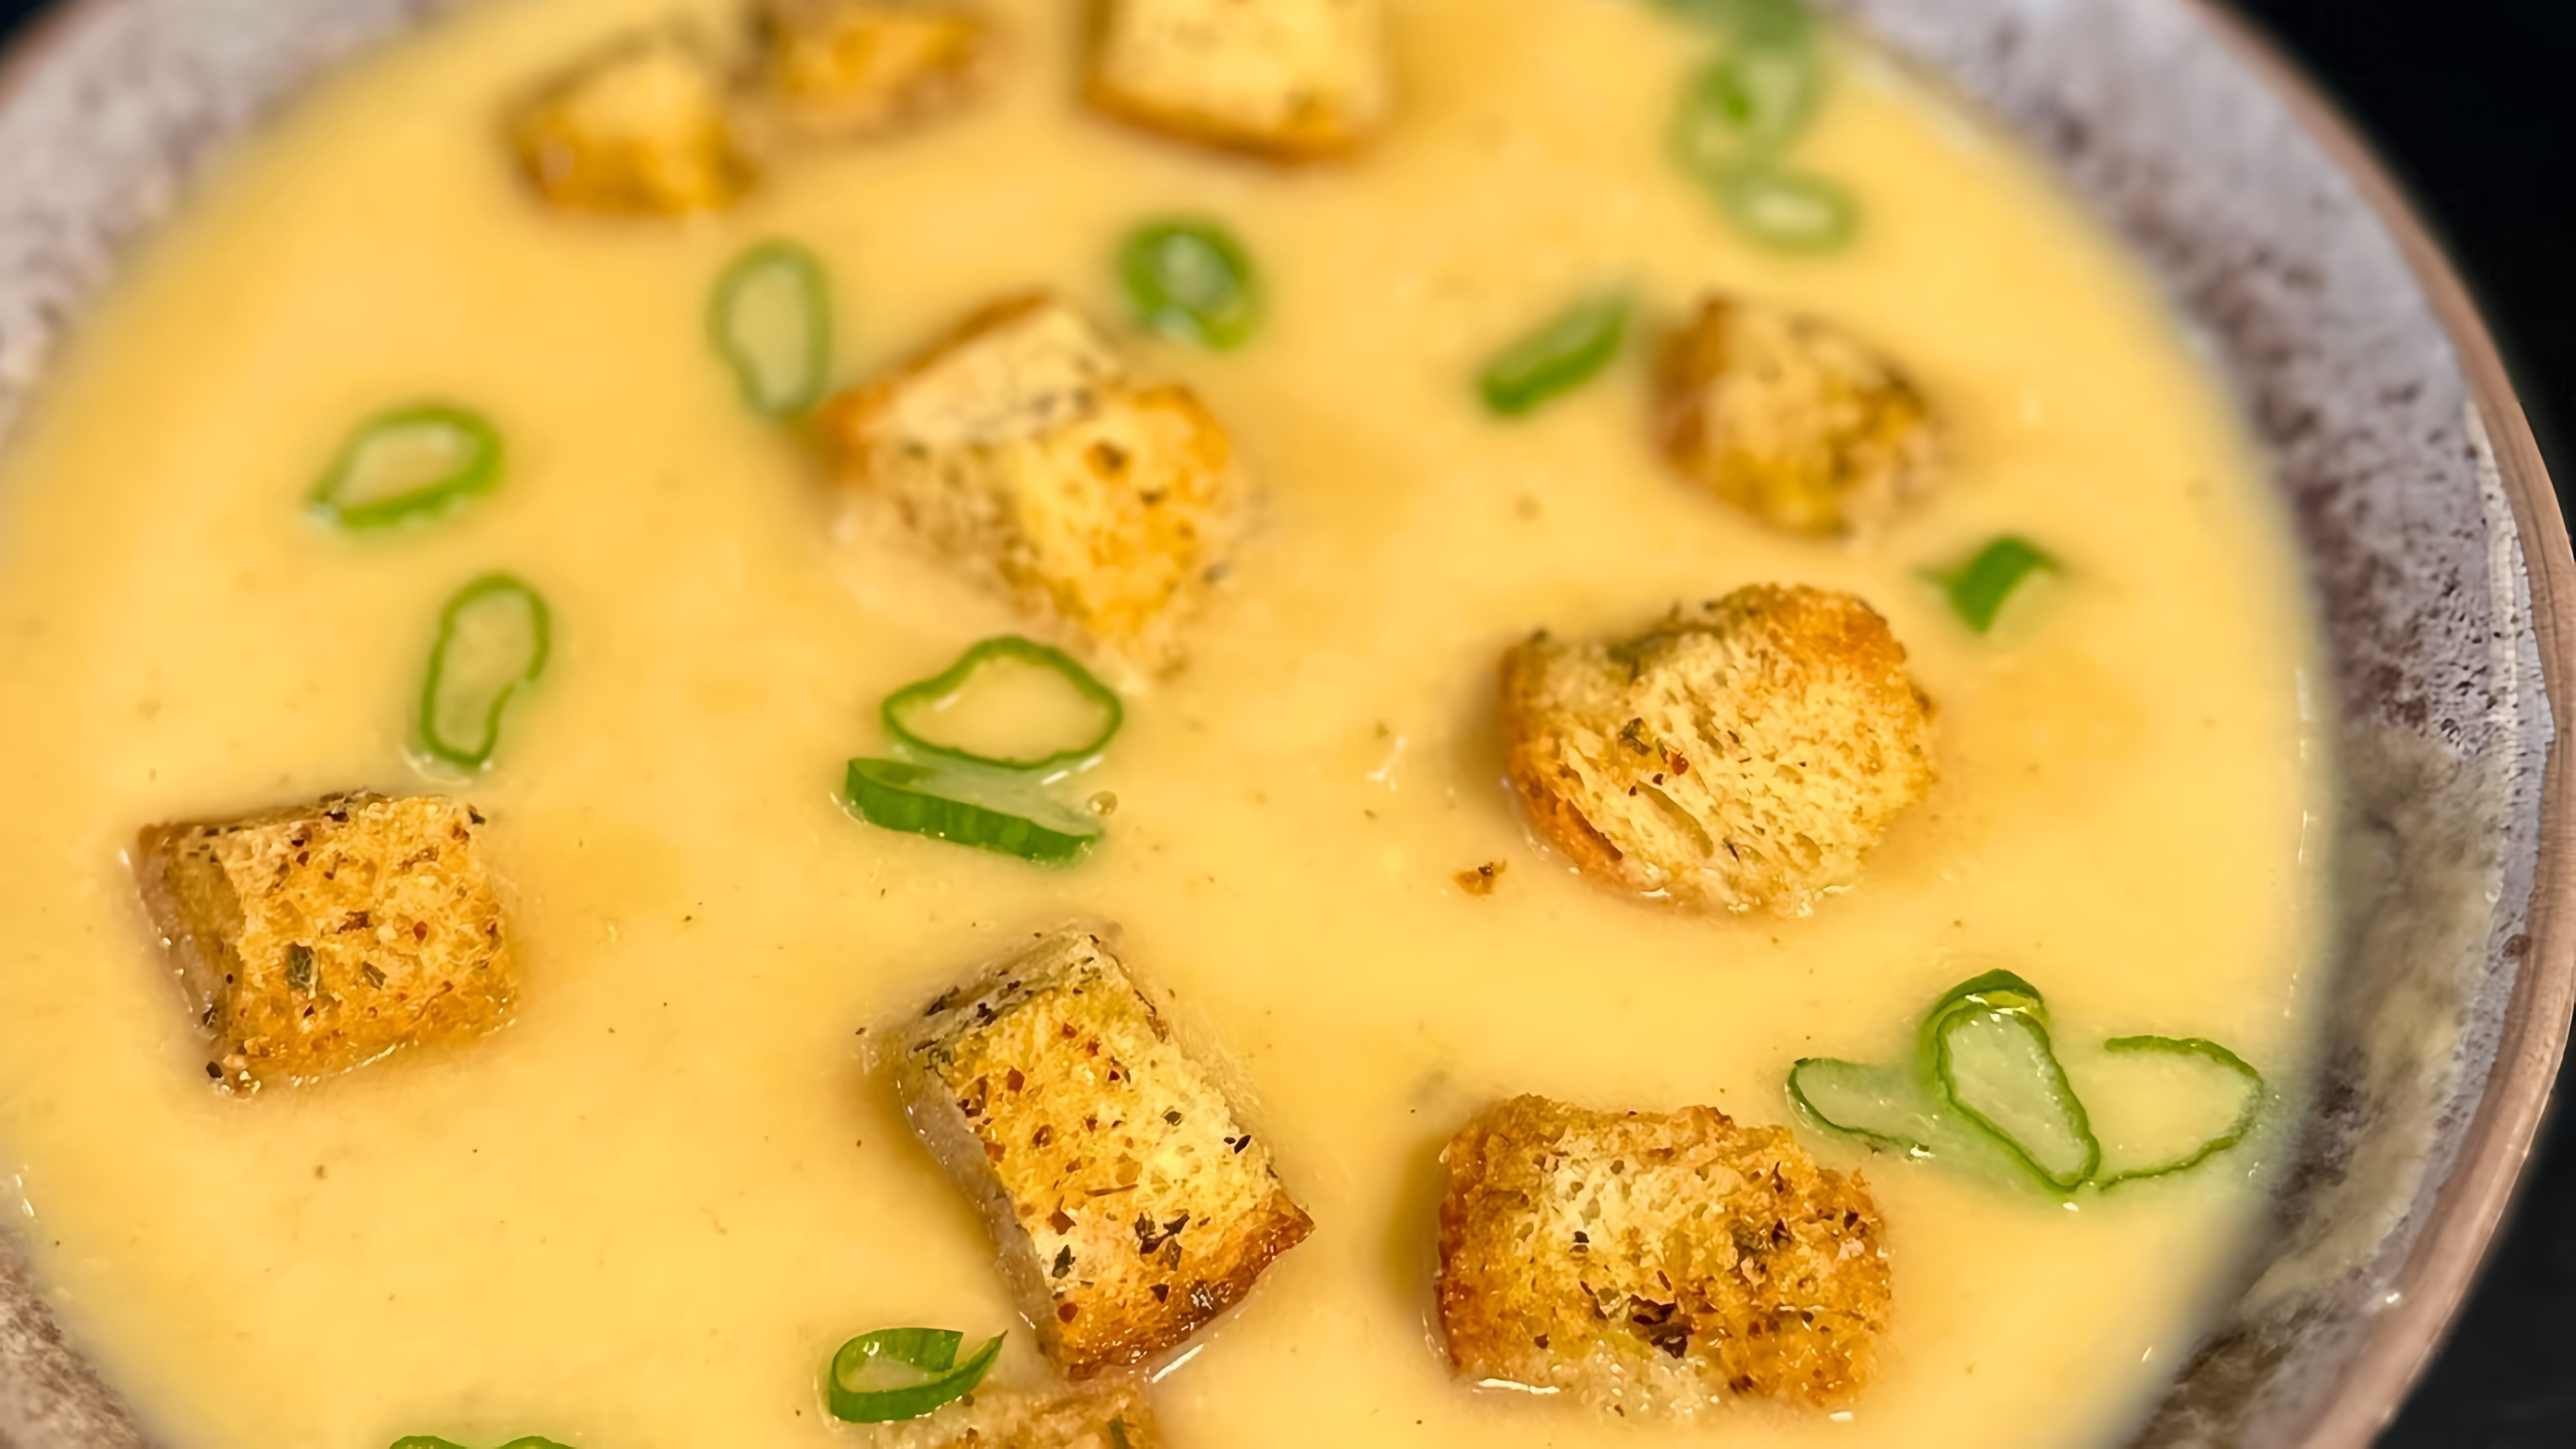 В этом видео демонстрируется рецепт приготовления картофельного супа